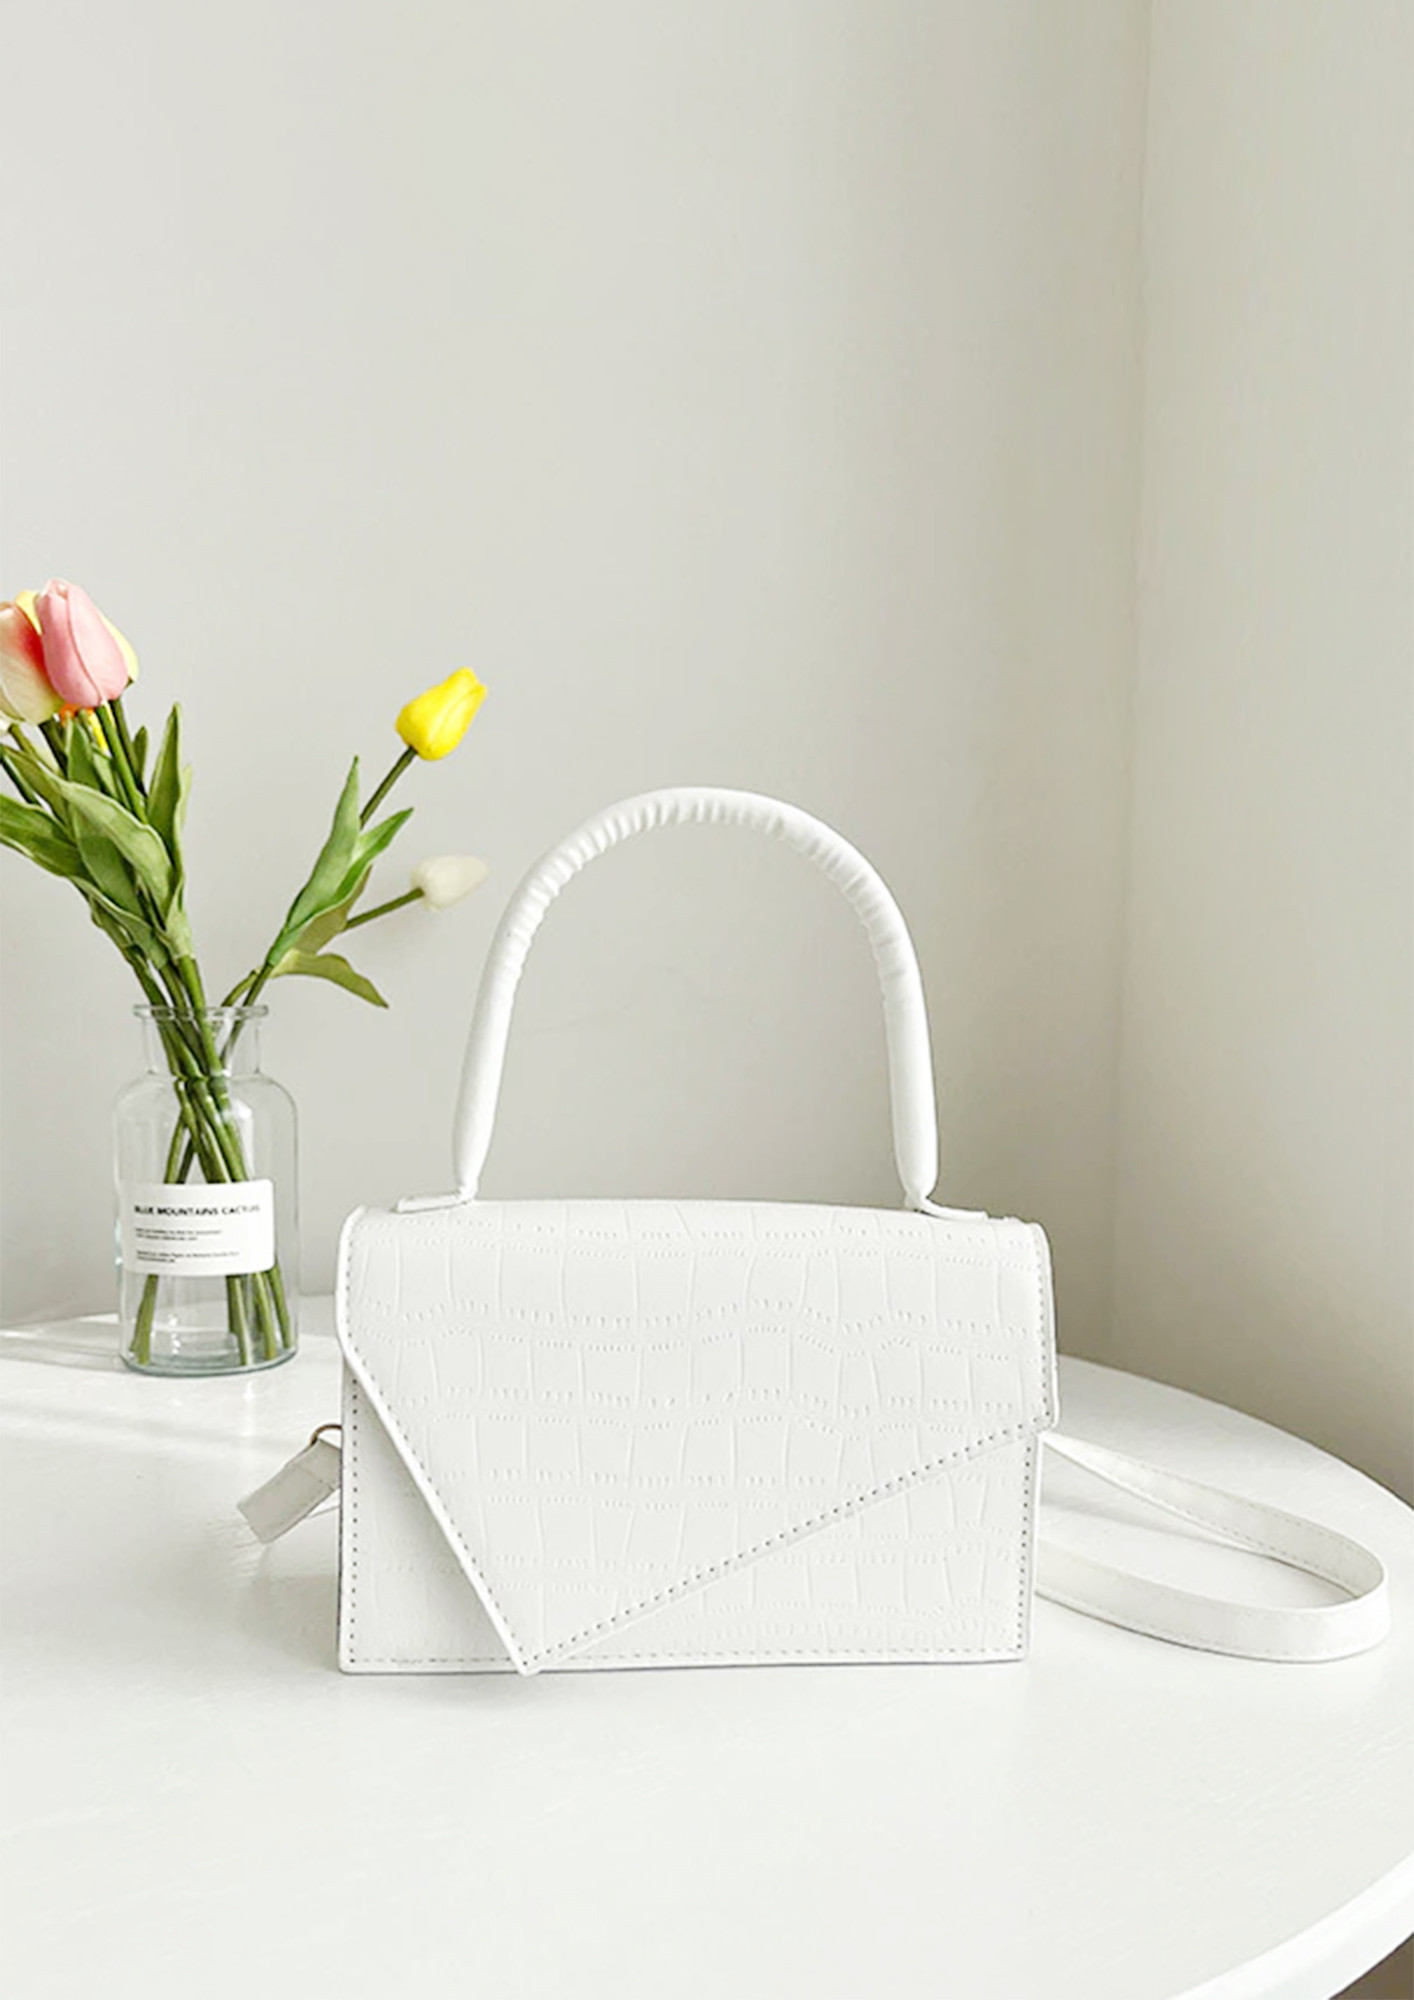 Designer Handbags Melbourne | Luxury Handbags for Sale Online – White Story